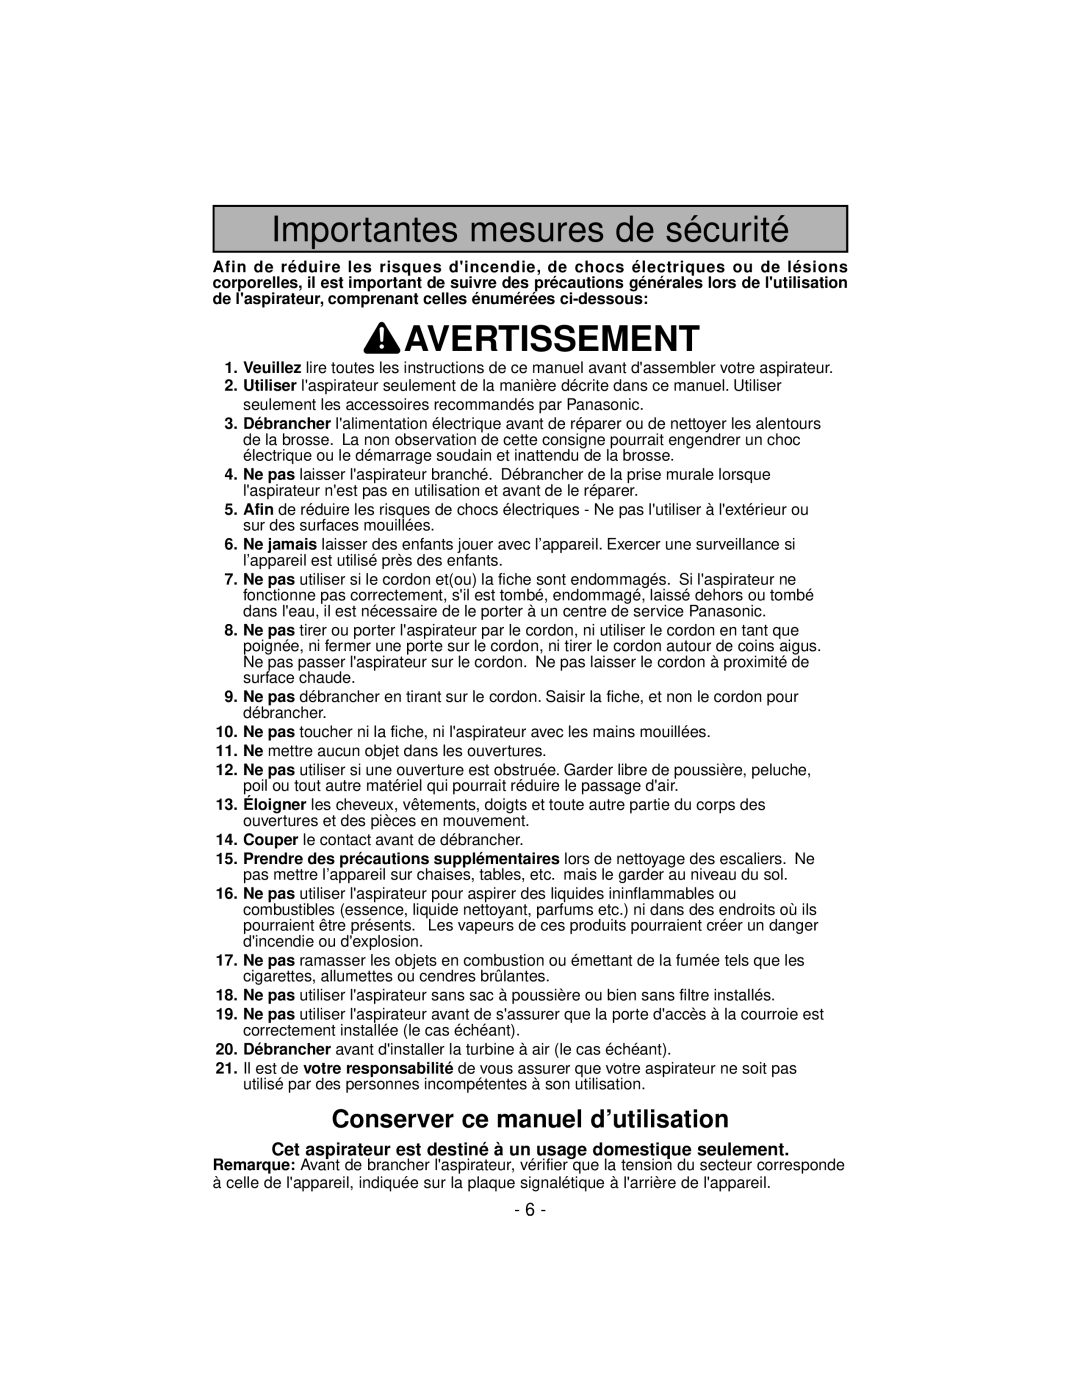 Panasonic MC-V7600 operating instructions Avertissement, Conserver ce manuel d’utilisation, Importantes mesures de sécurité 